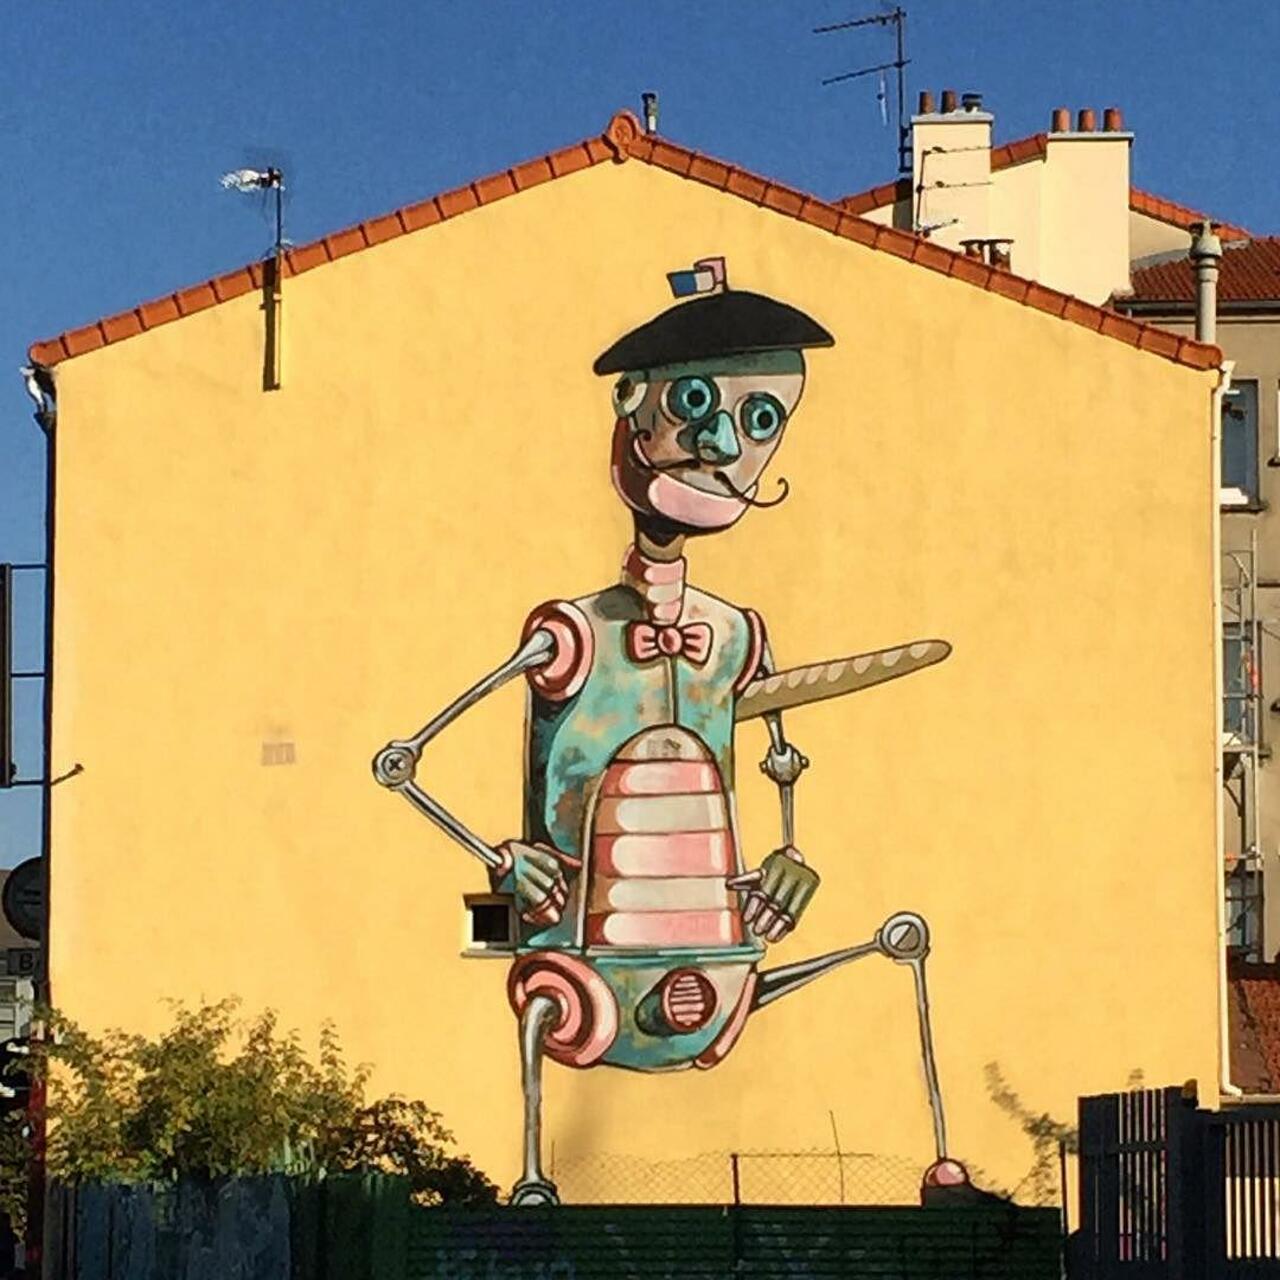 RT @circumjacent_fr: #Paris #graffiti photo by @jeanlucr http://ift.tt/1Pb8cYl #StreetArt http://t.co/8nsGHV0RPh